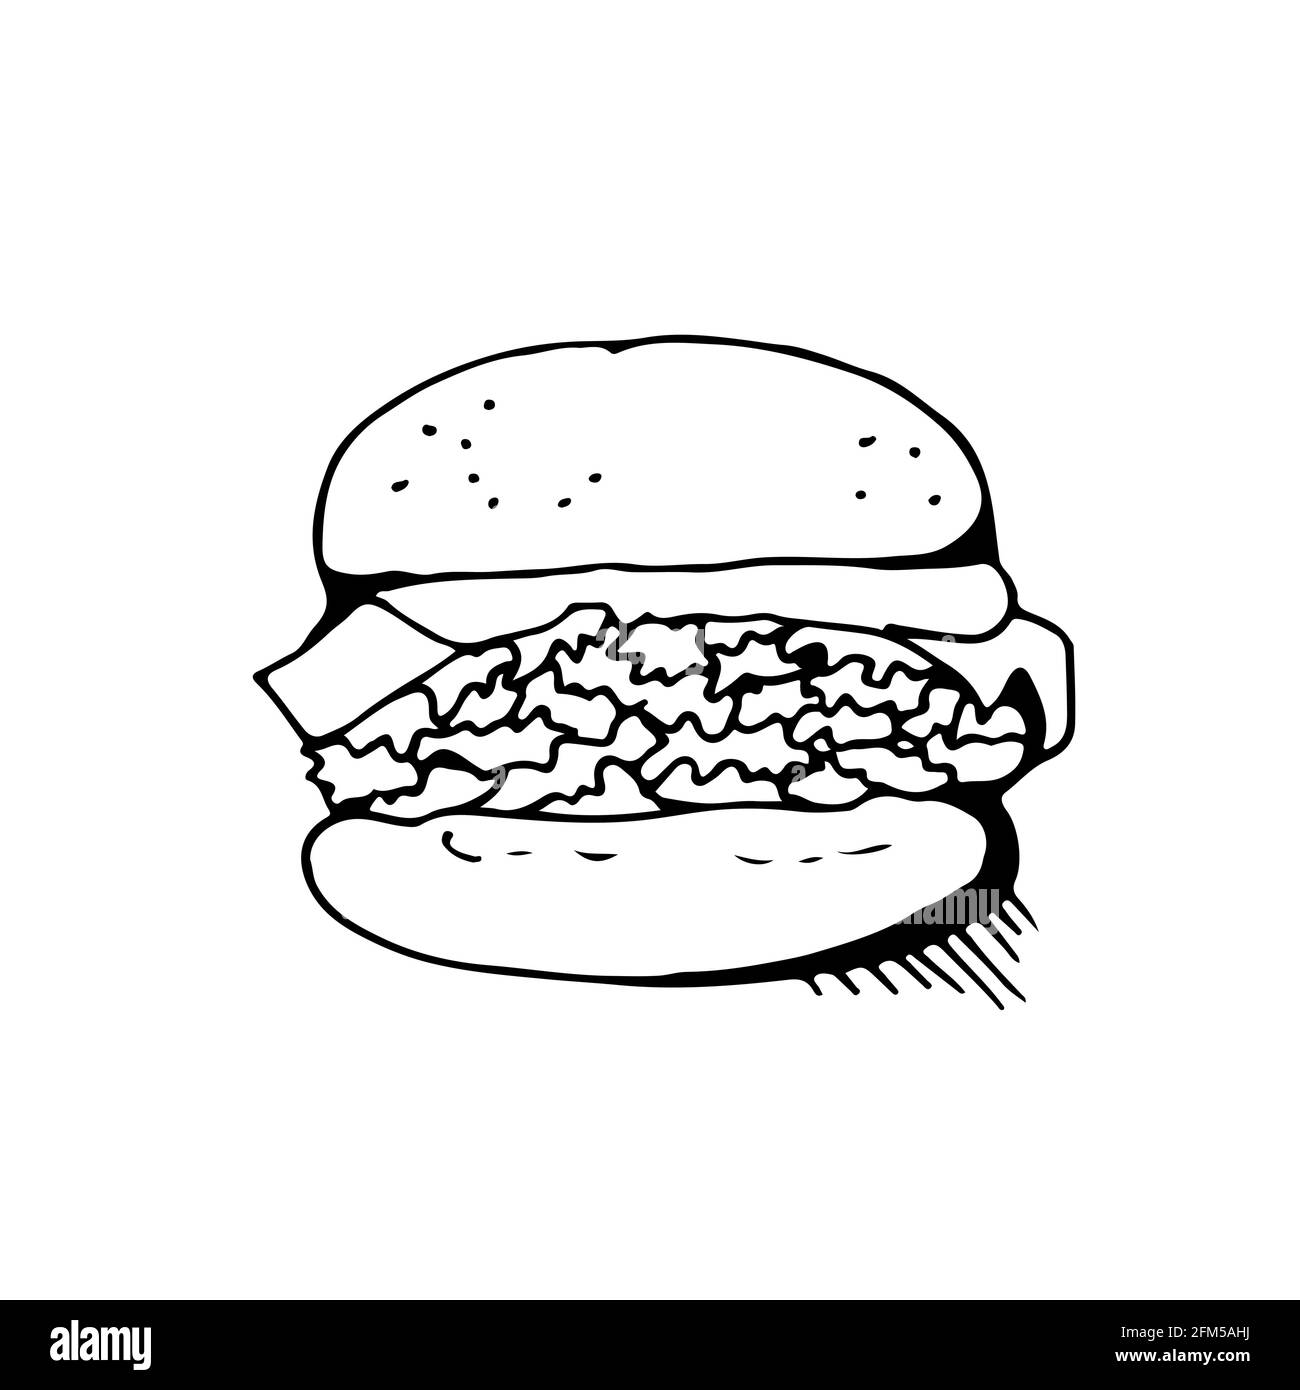 Vektor-Skizze für Burger, Food-Illustration isoliert auf weißem Hintergrund Stock Vektor